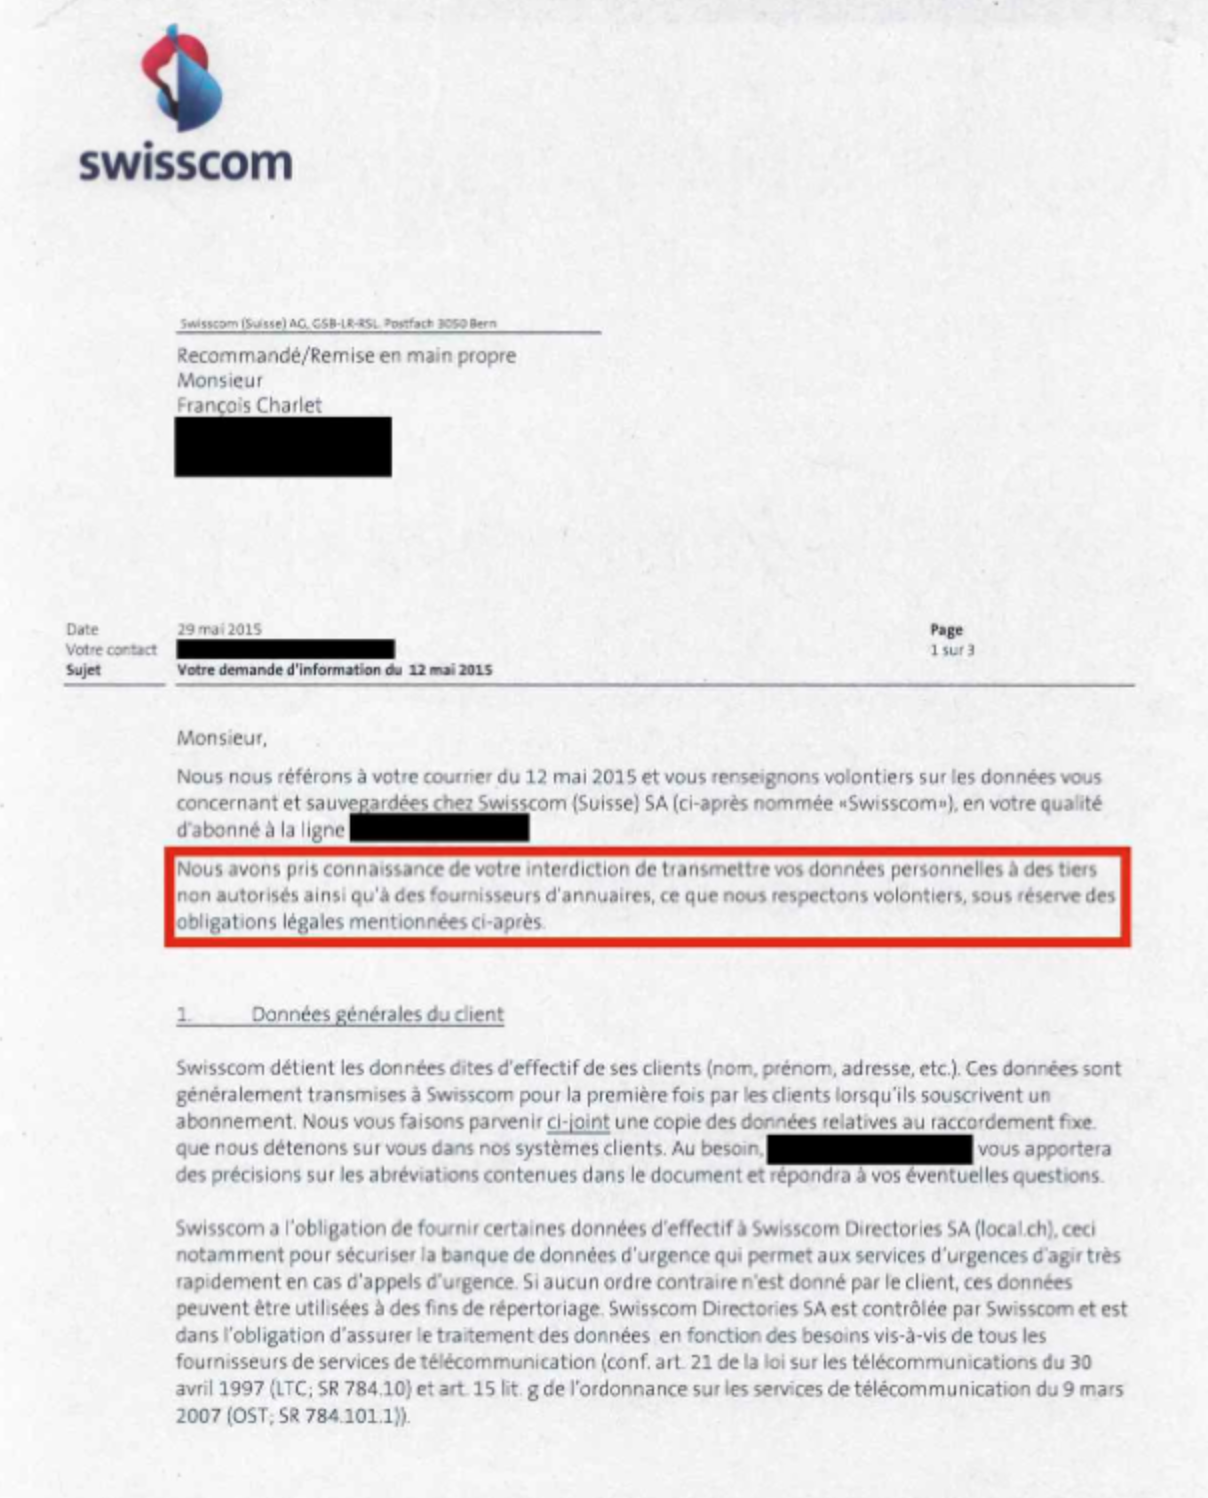 Le courrier de Swisscom envoyé à François Charlet.